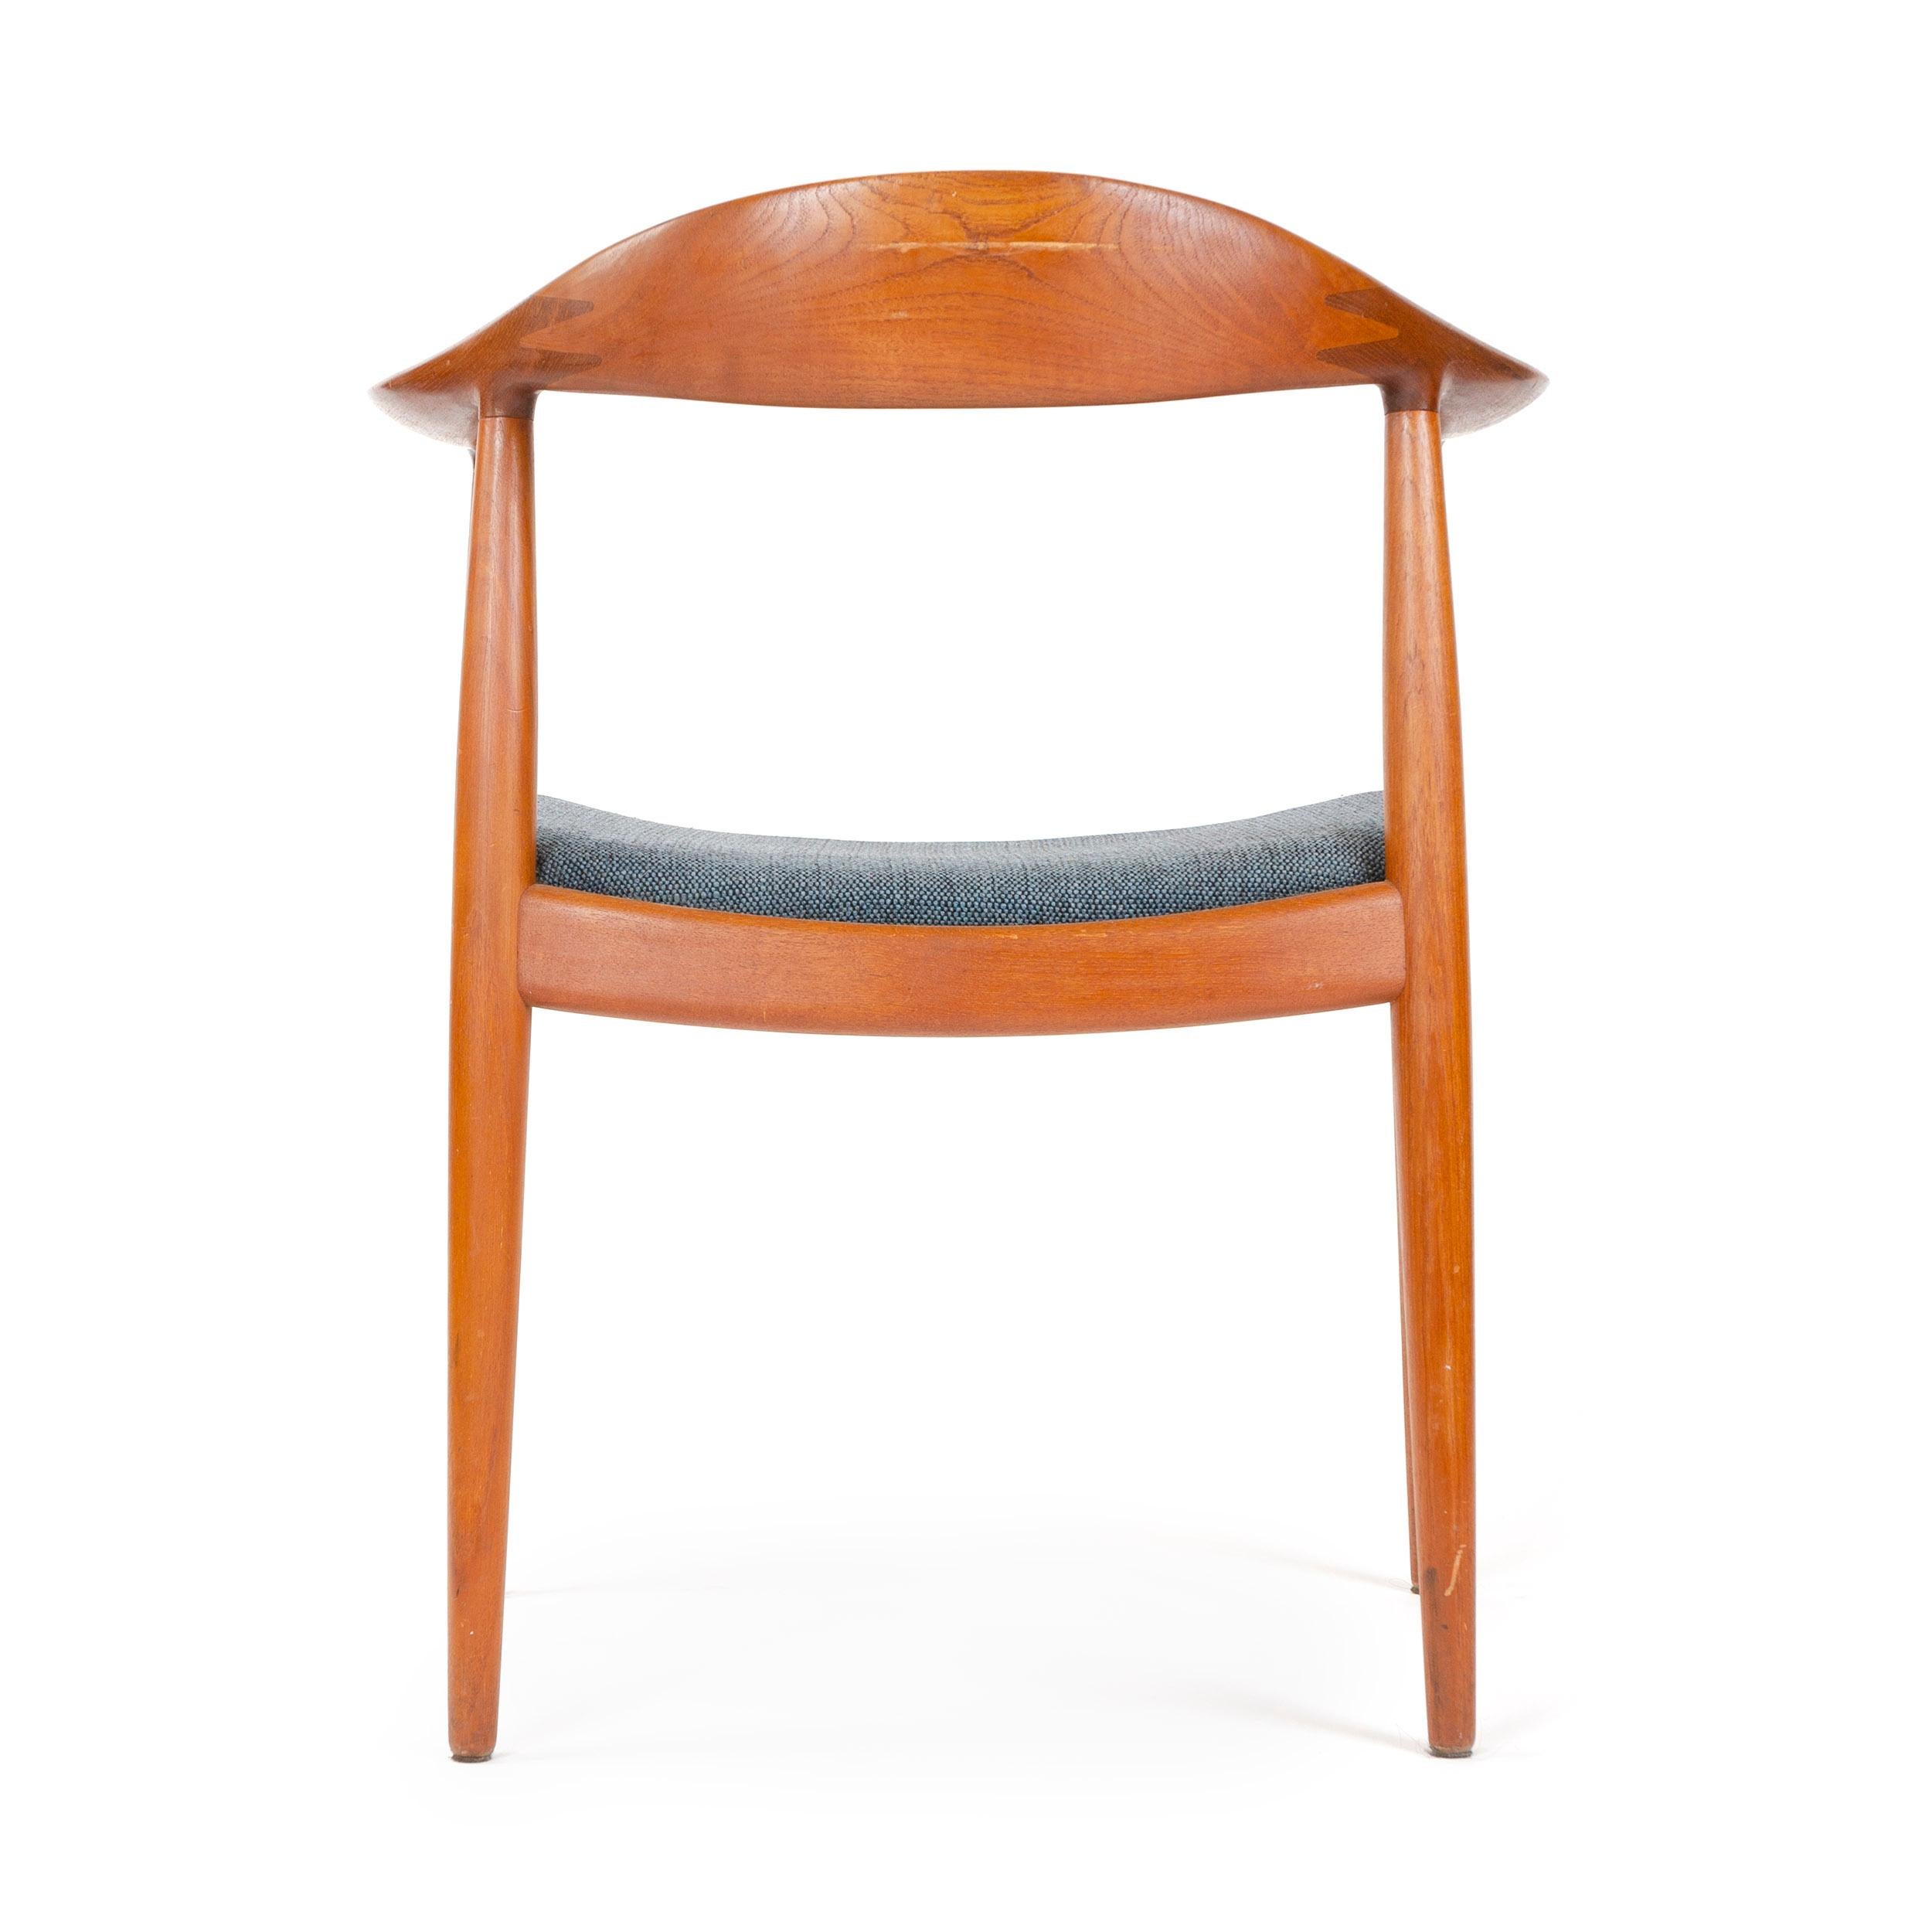 Danish Teak Round Chair with Upholstered Seat by Hans J. Wegner for Johannes Hansen